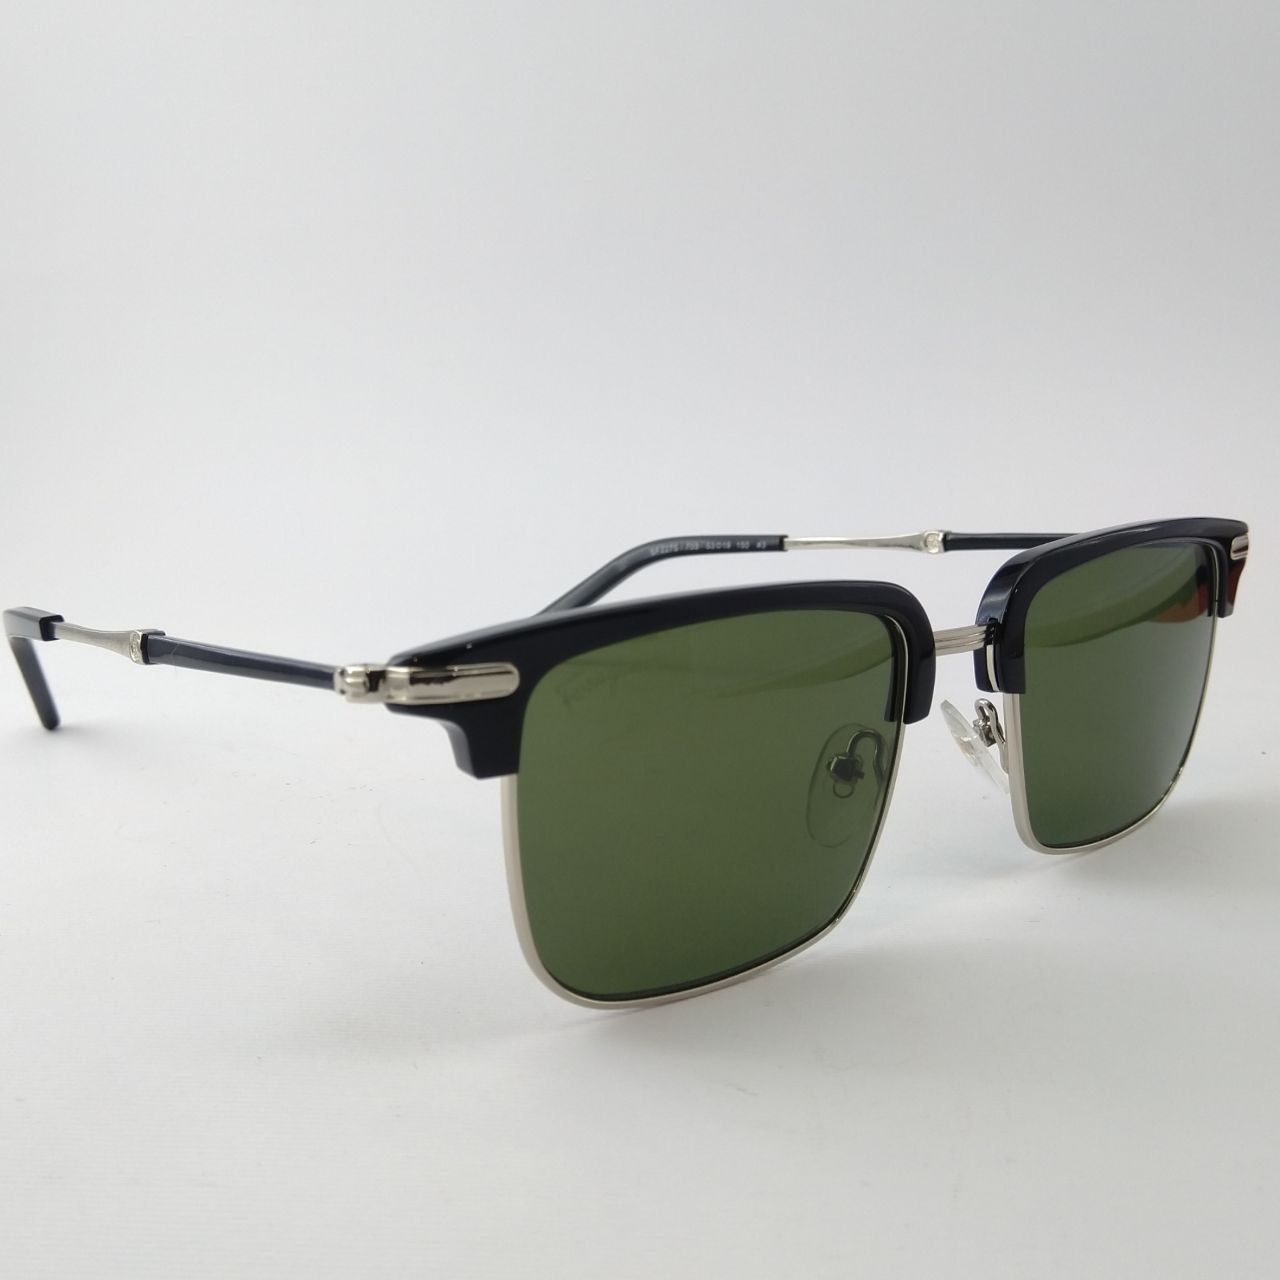 عینک آفتابی سالواتوره فراگامو مدل SF227S 703 -  - 2